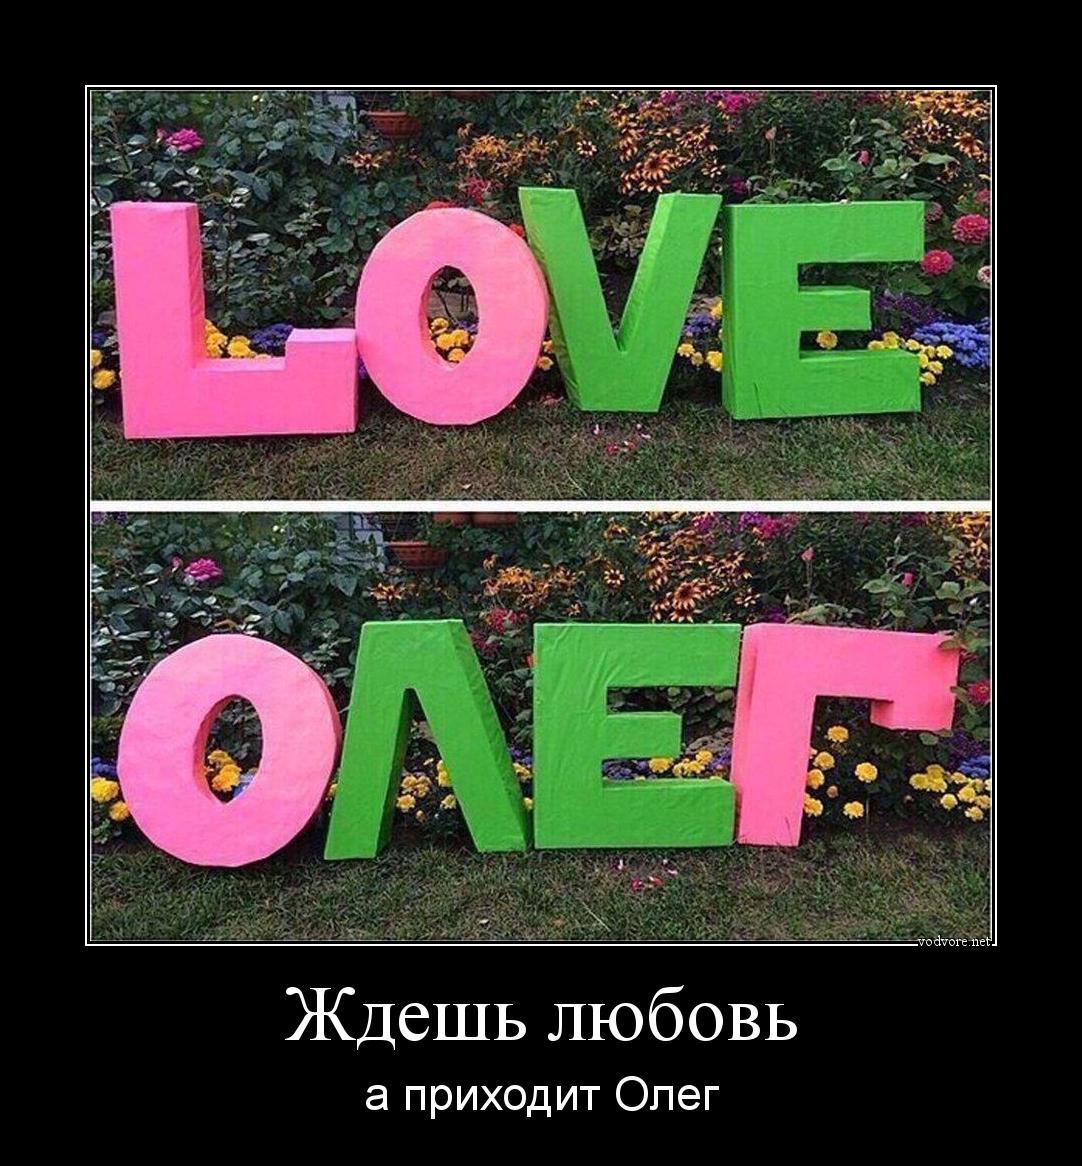 Демотиватор: Ждешь любовь а приходит Олег